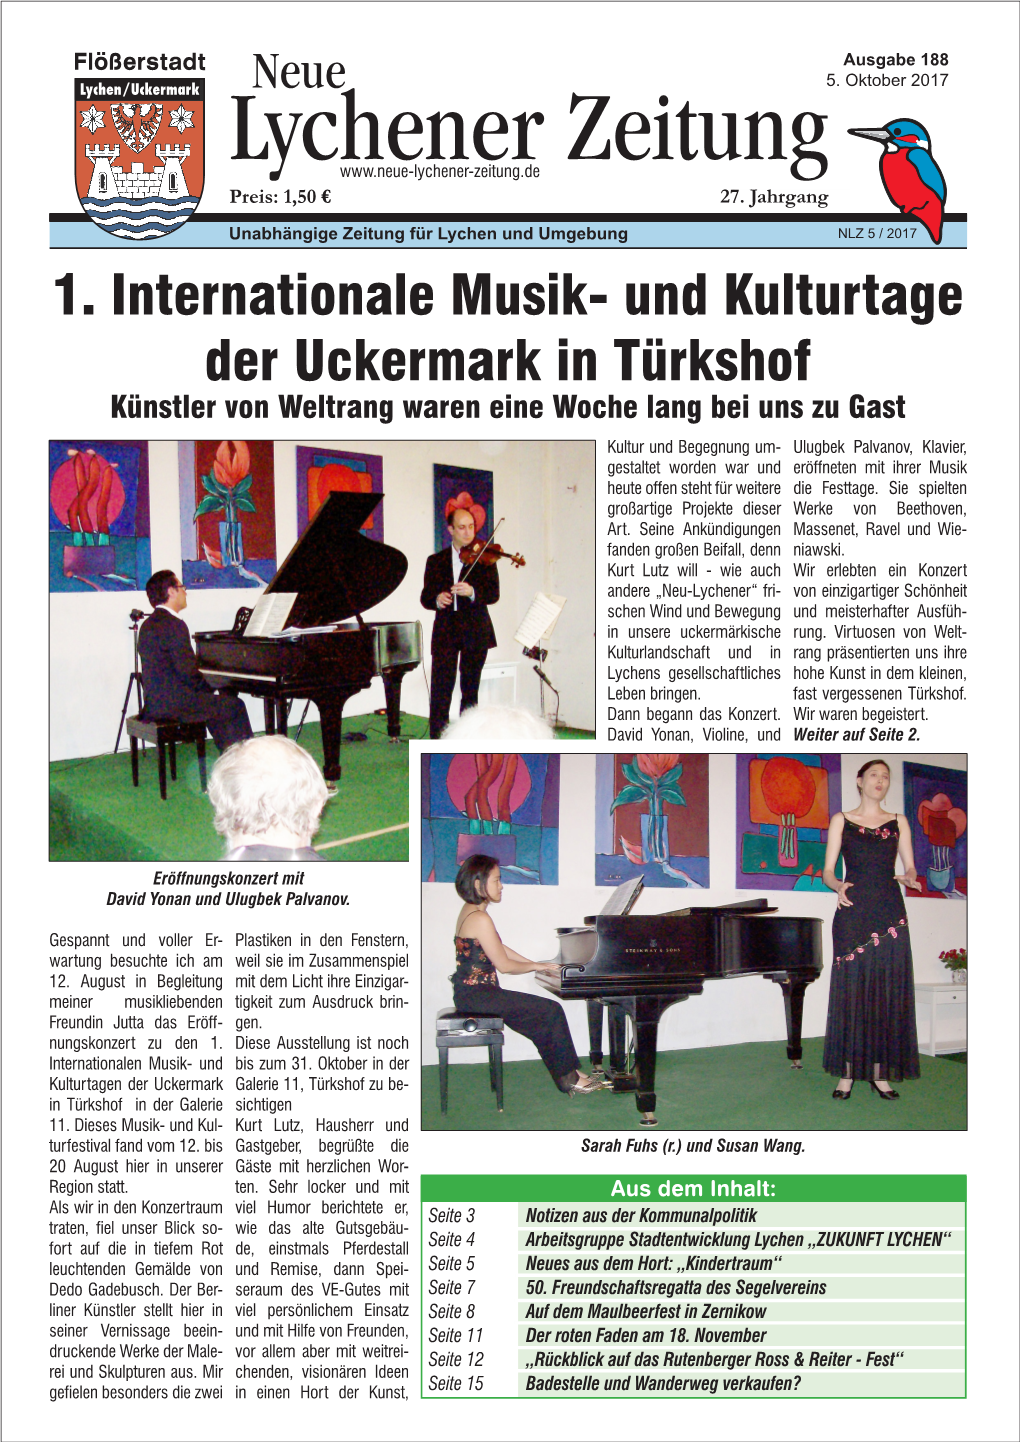 1. Internationale Musik- Und Kulturtage Der Uckermark in Türkshof